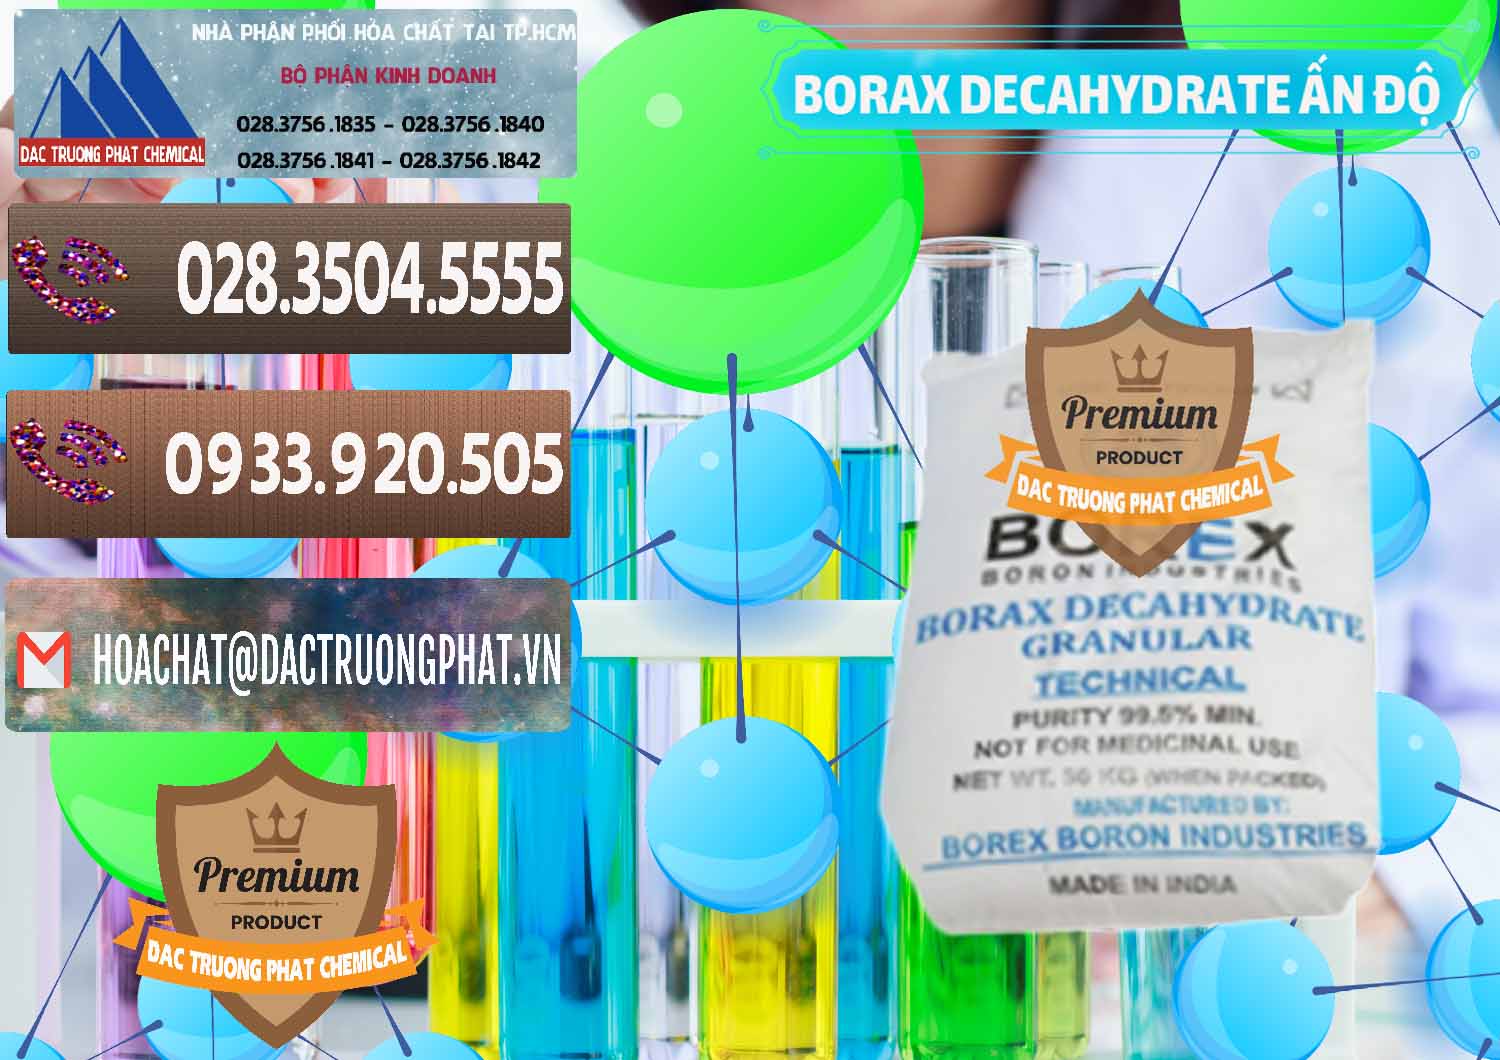 Cty bán _ cung ứng Borax Decahydrate Ấn Độ India - 0449 - Cty chuyên cung cấp & kinh doanh hóa chất tại TP.HCM - hoachatviet.net